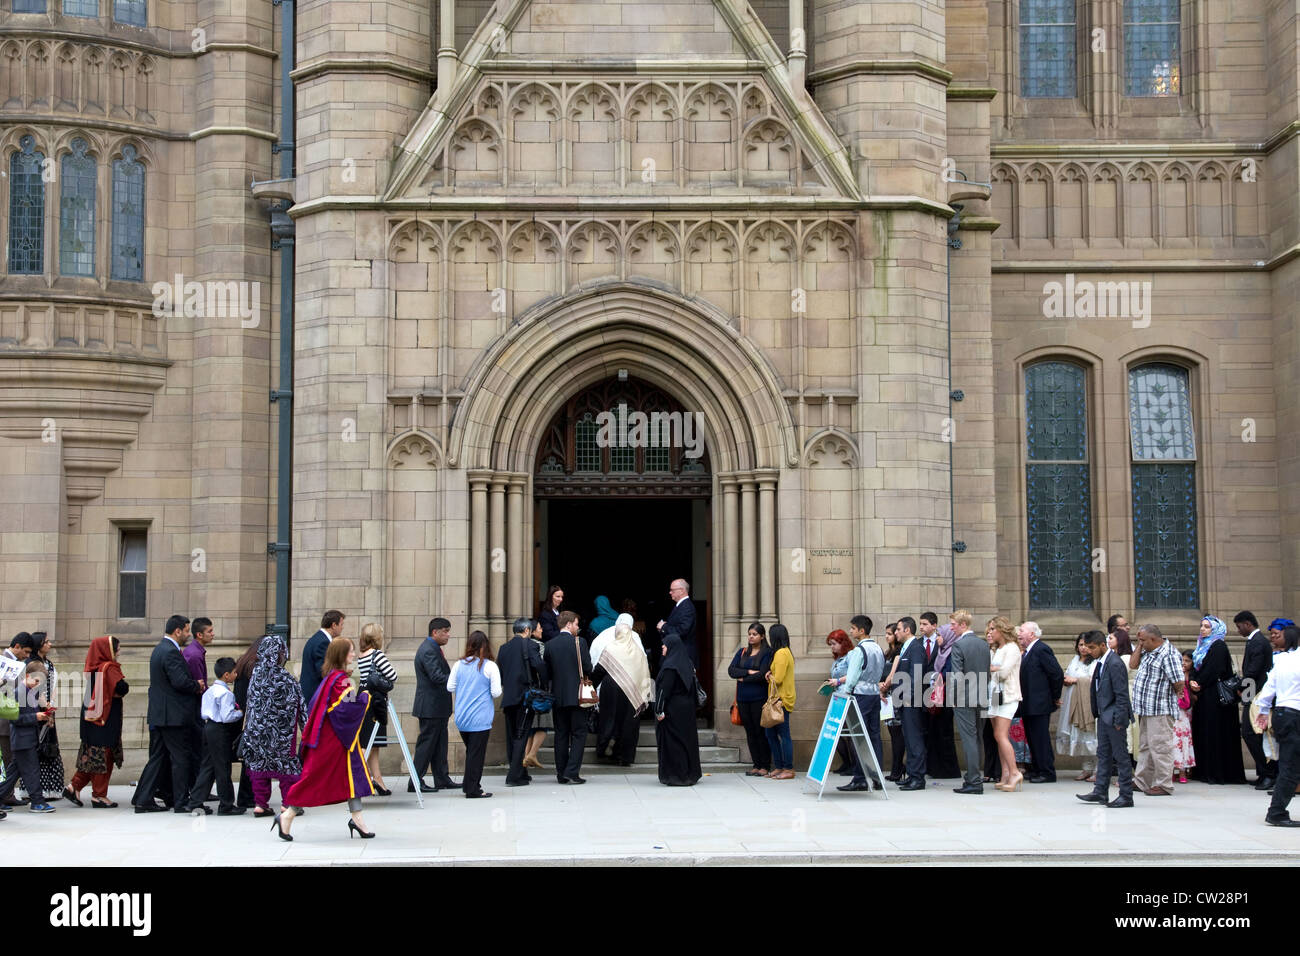 Les familles et les clients d'attente pour la cérémonie de diplôme, Whitworth Hall, Université de Manchester, Manchester, Angleterre, RU Banque D'Images